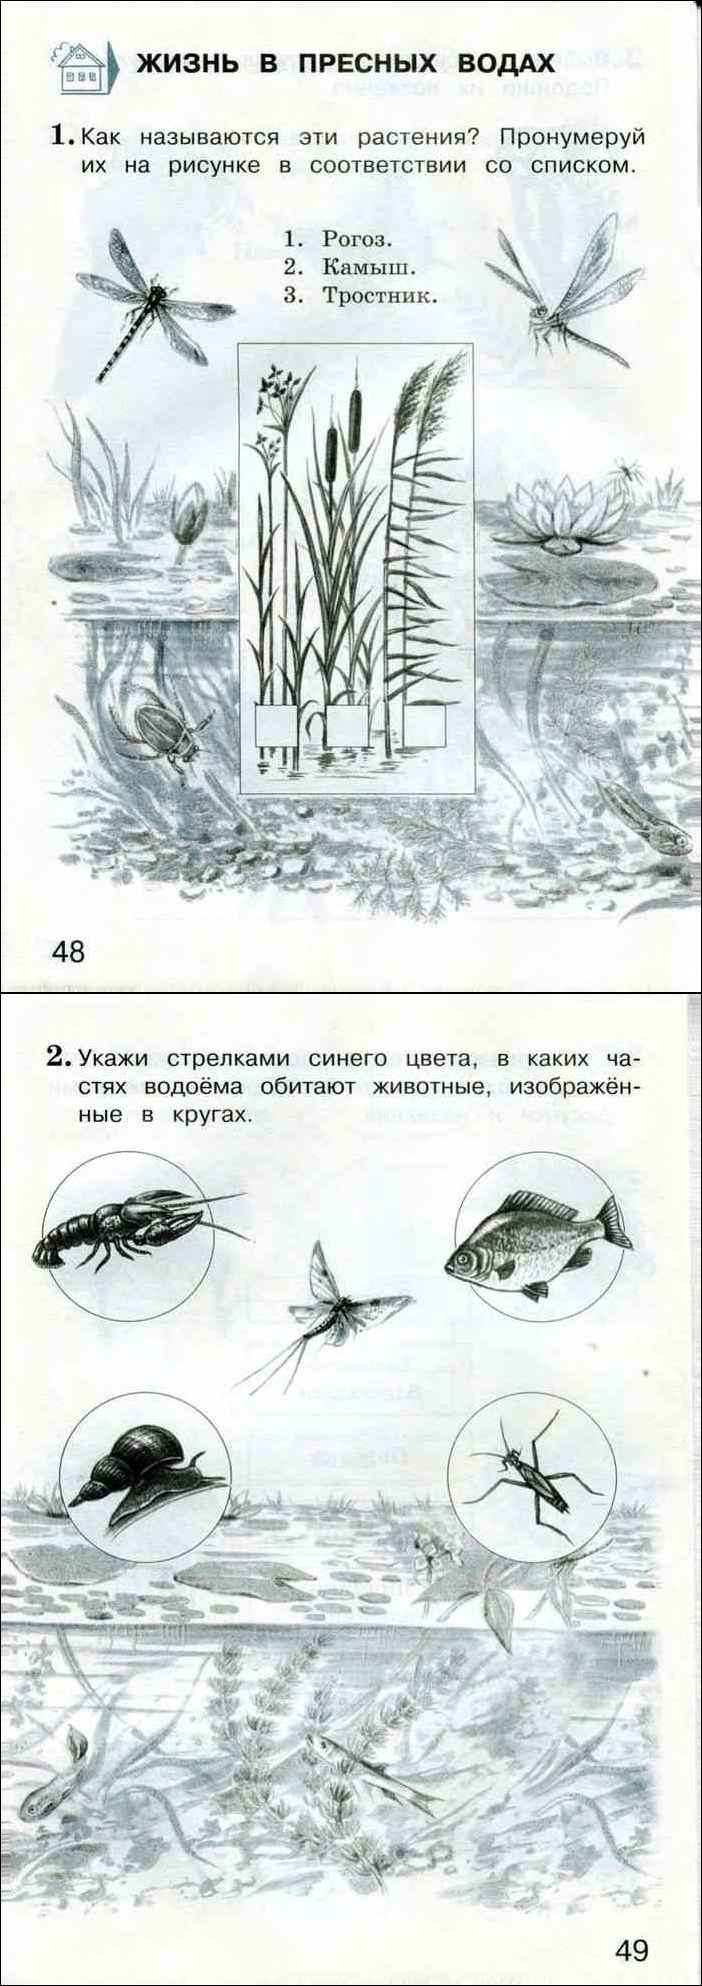 Определите с помощью атласа определителя животных изображенных на рисунках учебника